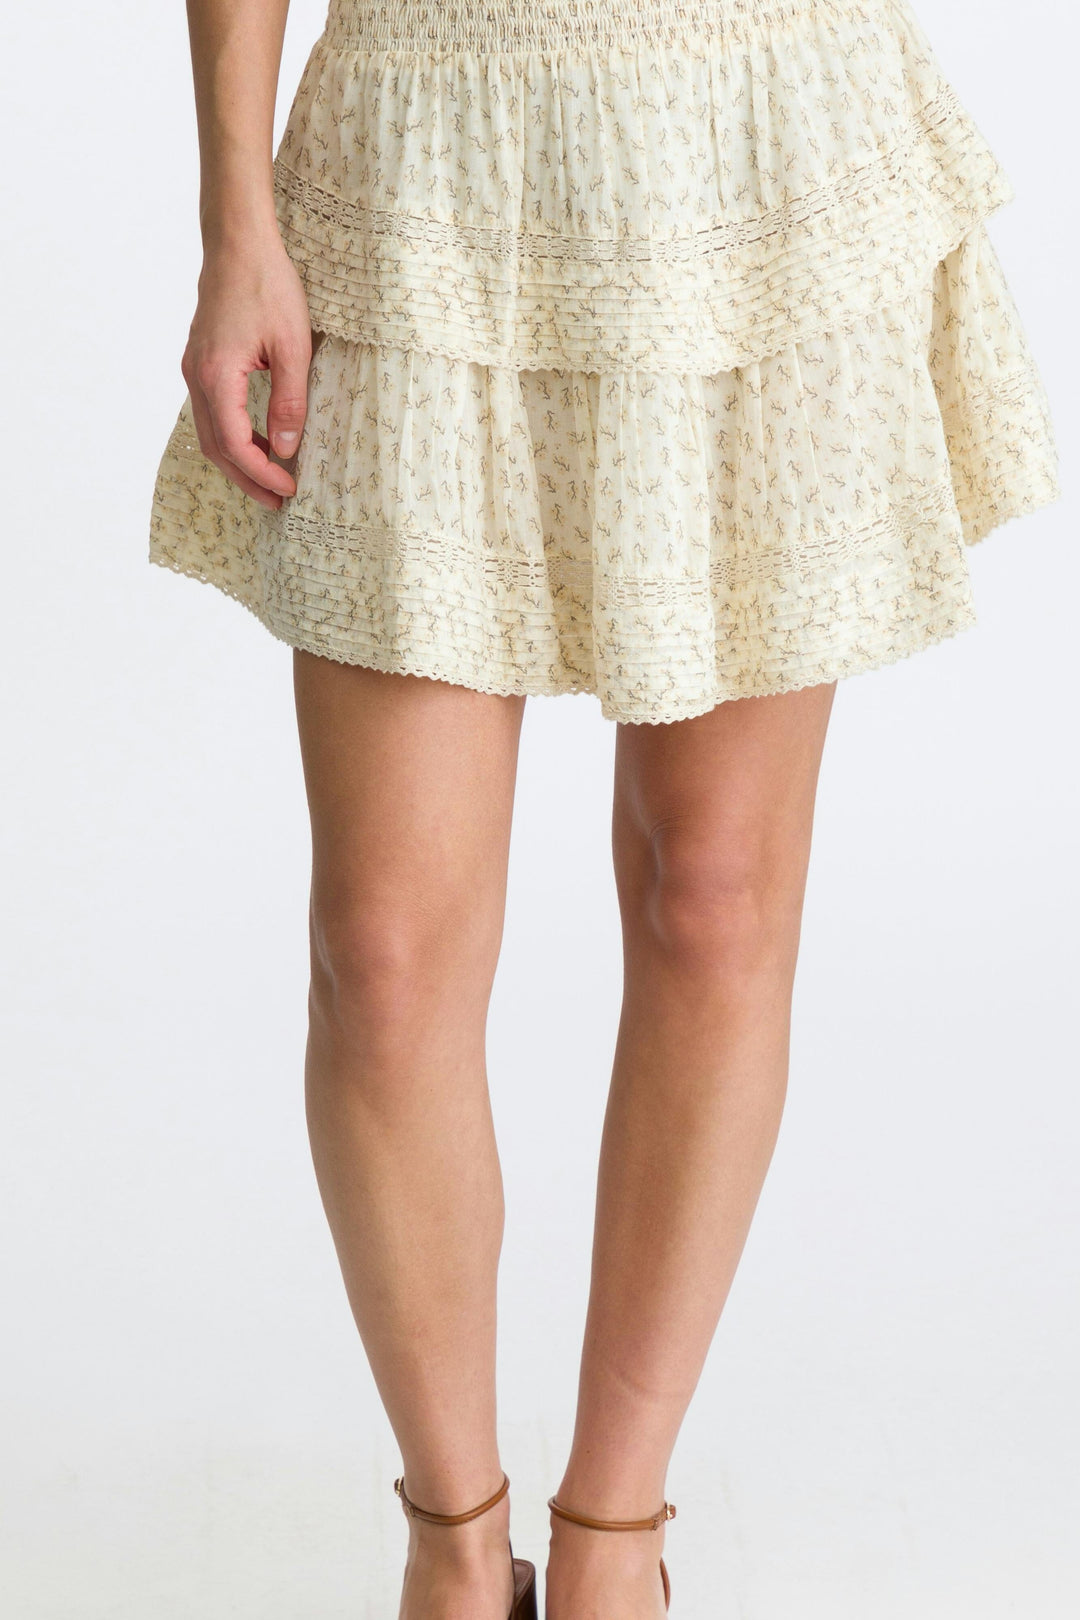 Neo Noir - Kenia Basic Blossom Skirt - Creme